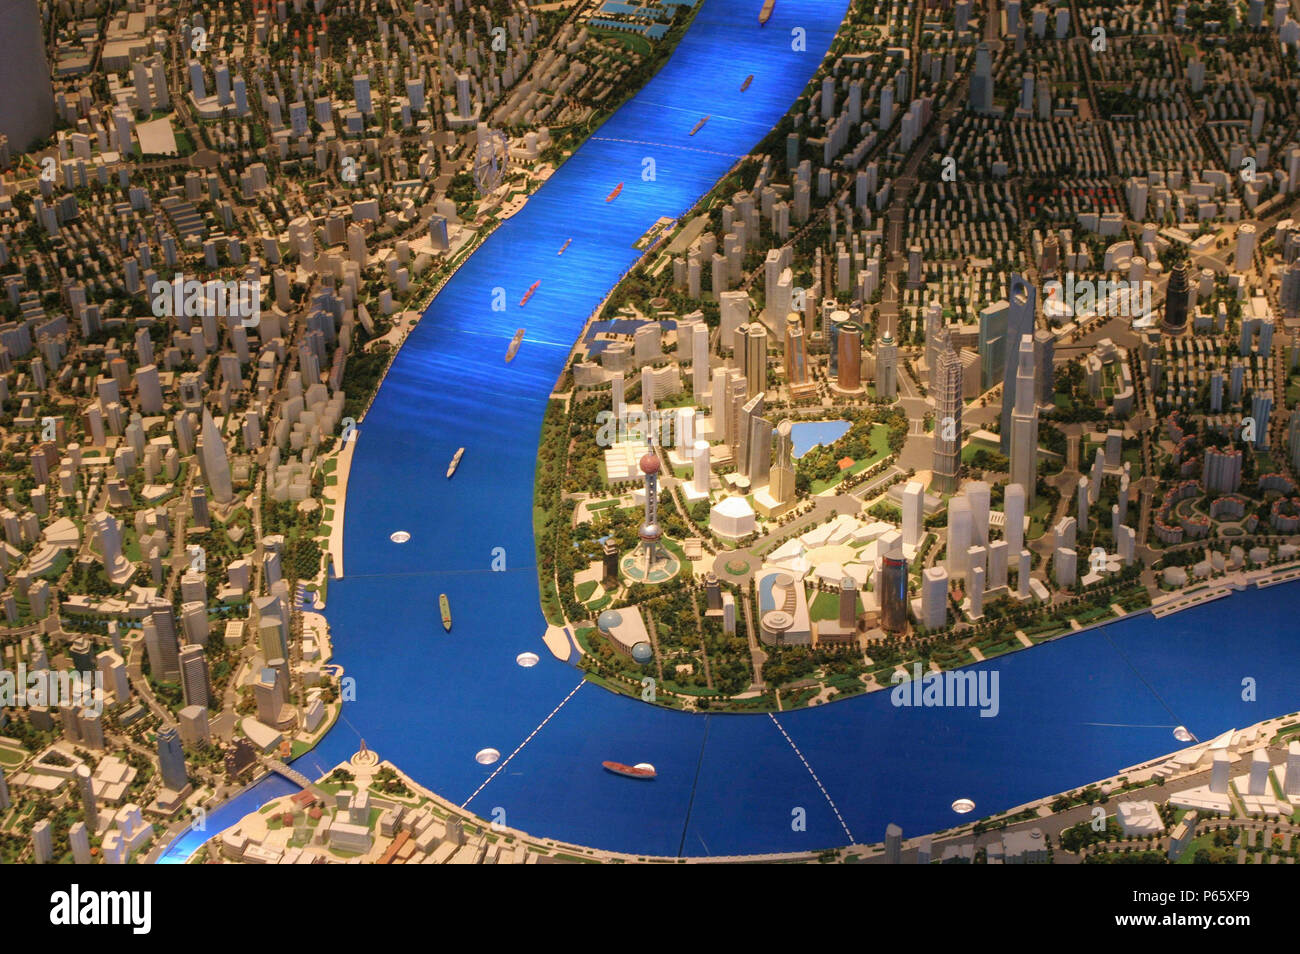 Maqueta de planificación urbana de Shanghai, China. Foto de stock